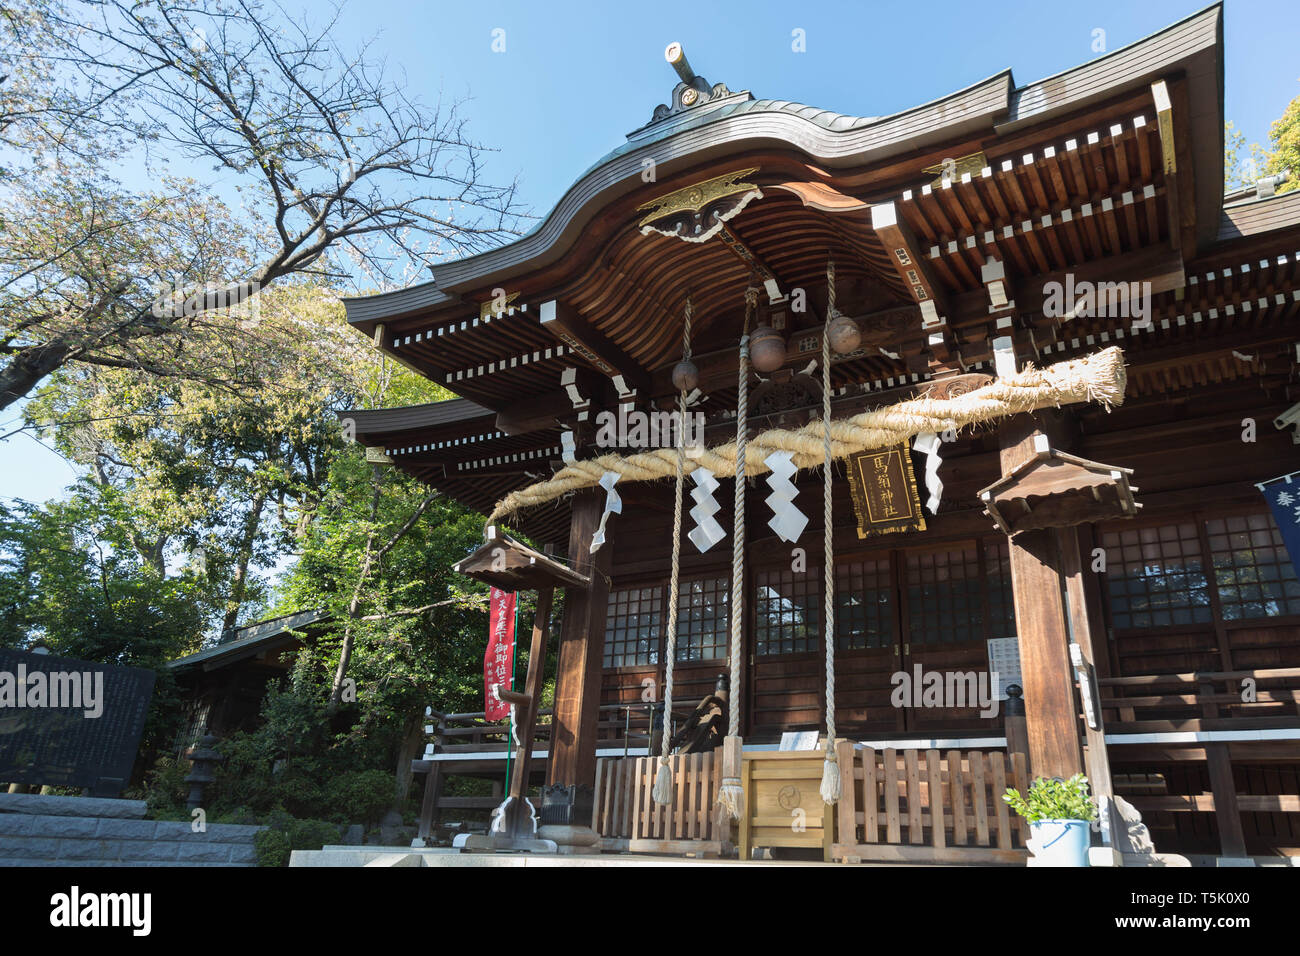 Le bâtiment principal de l'Maginu culte origine enregistrés une divinité féminine, établies avant 1688 mais l'année exacte inconnue, situé à Kawasaki, Japon. Banque D'Images